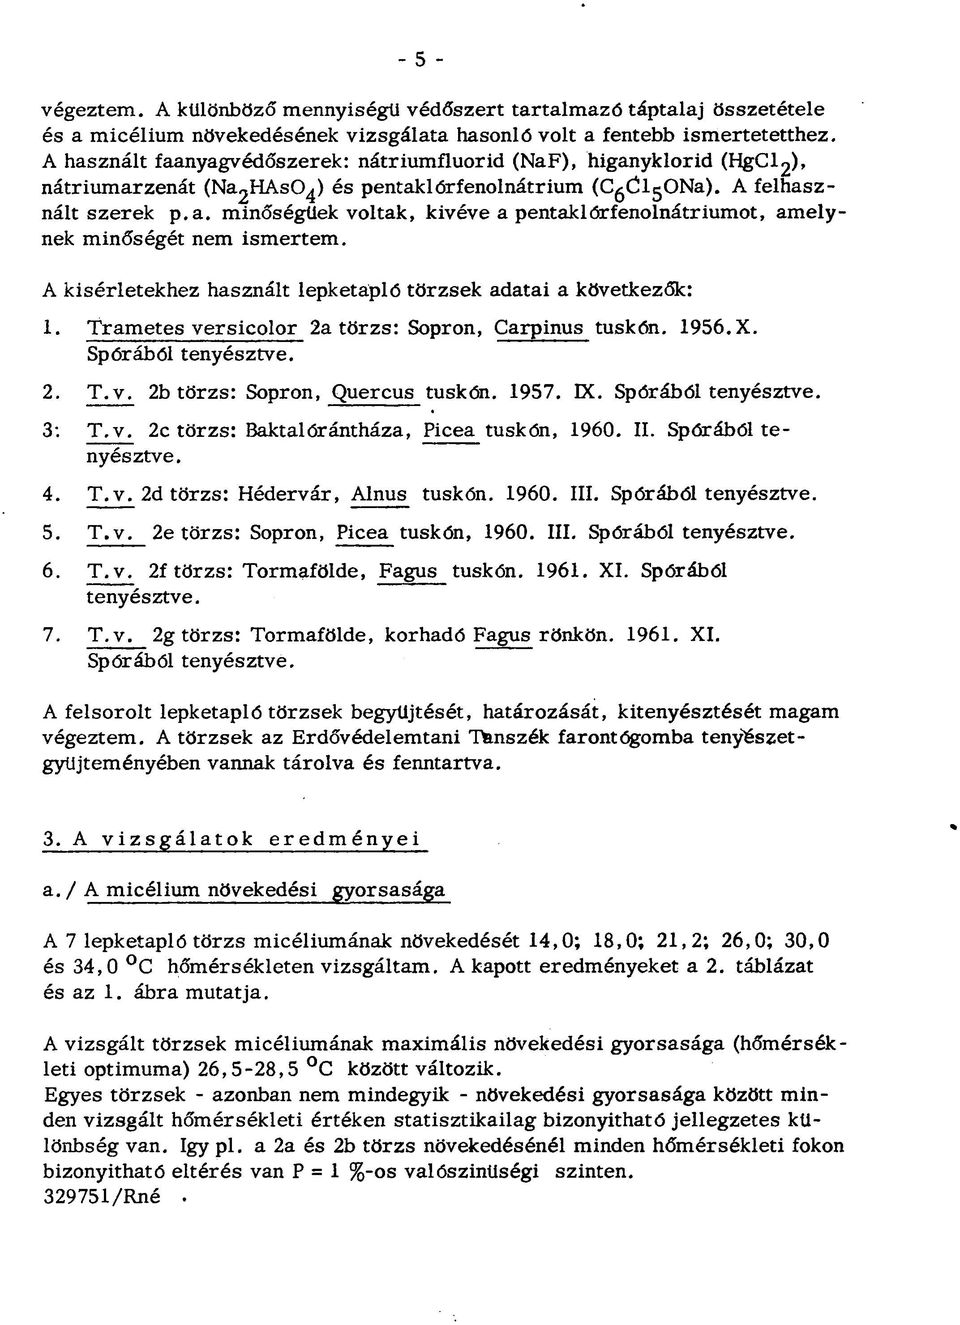 A kísérletekhez használt lepketapló törzsek adatai a következők: 1. Trametes versicolor 2a törzs: Sopron, Carpinus tuskón. 1956. X. Spórából tenyésztve. 2. T.v. 2b törzs: Sopron, Quercus tuskón. 1957.